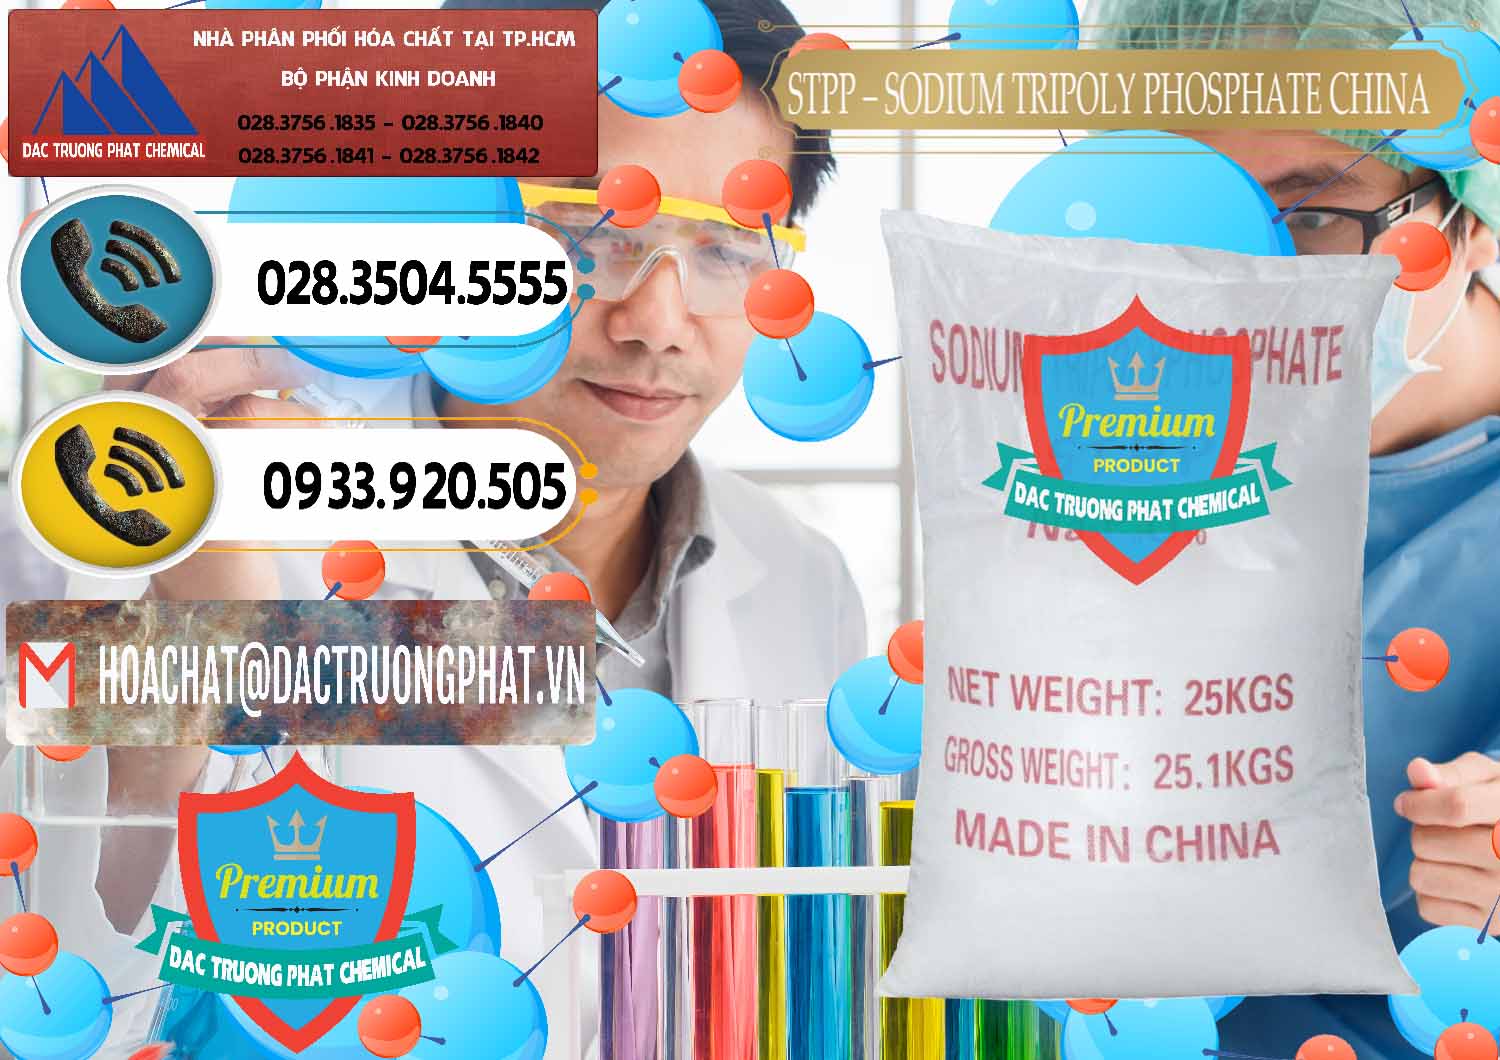 Cty phân phối - bán Sodium Tripoly Phosphate - STPP 96% Chữ Đỏ Trung Quốc China - 0155 - Chuyên kinh doanh & cung cấp hóa chất tại TP.HCM - hoachatdetnhuom.vn